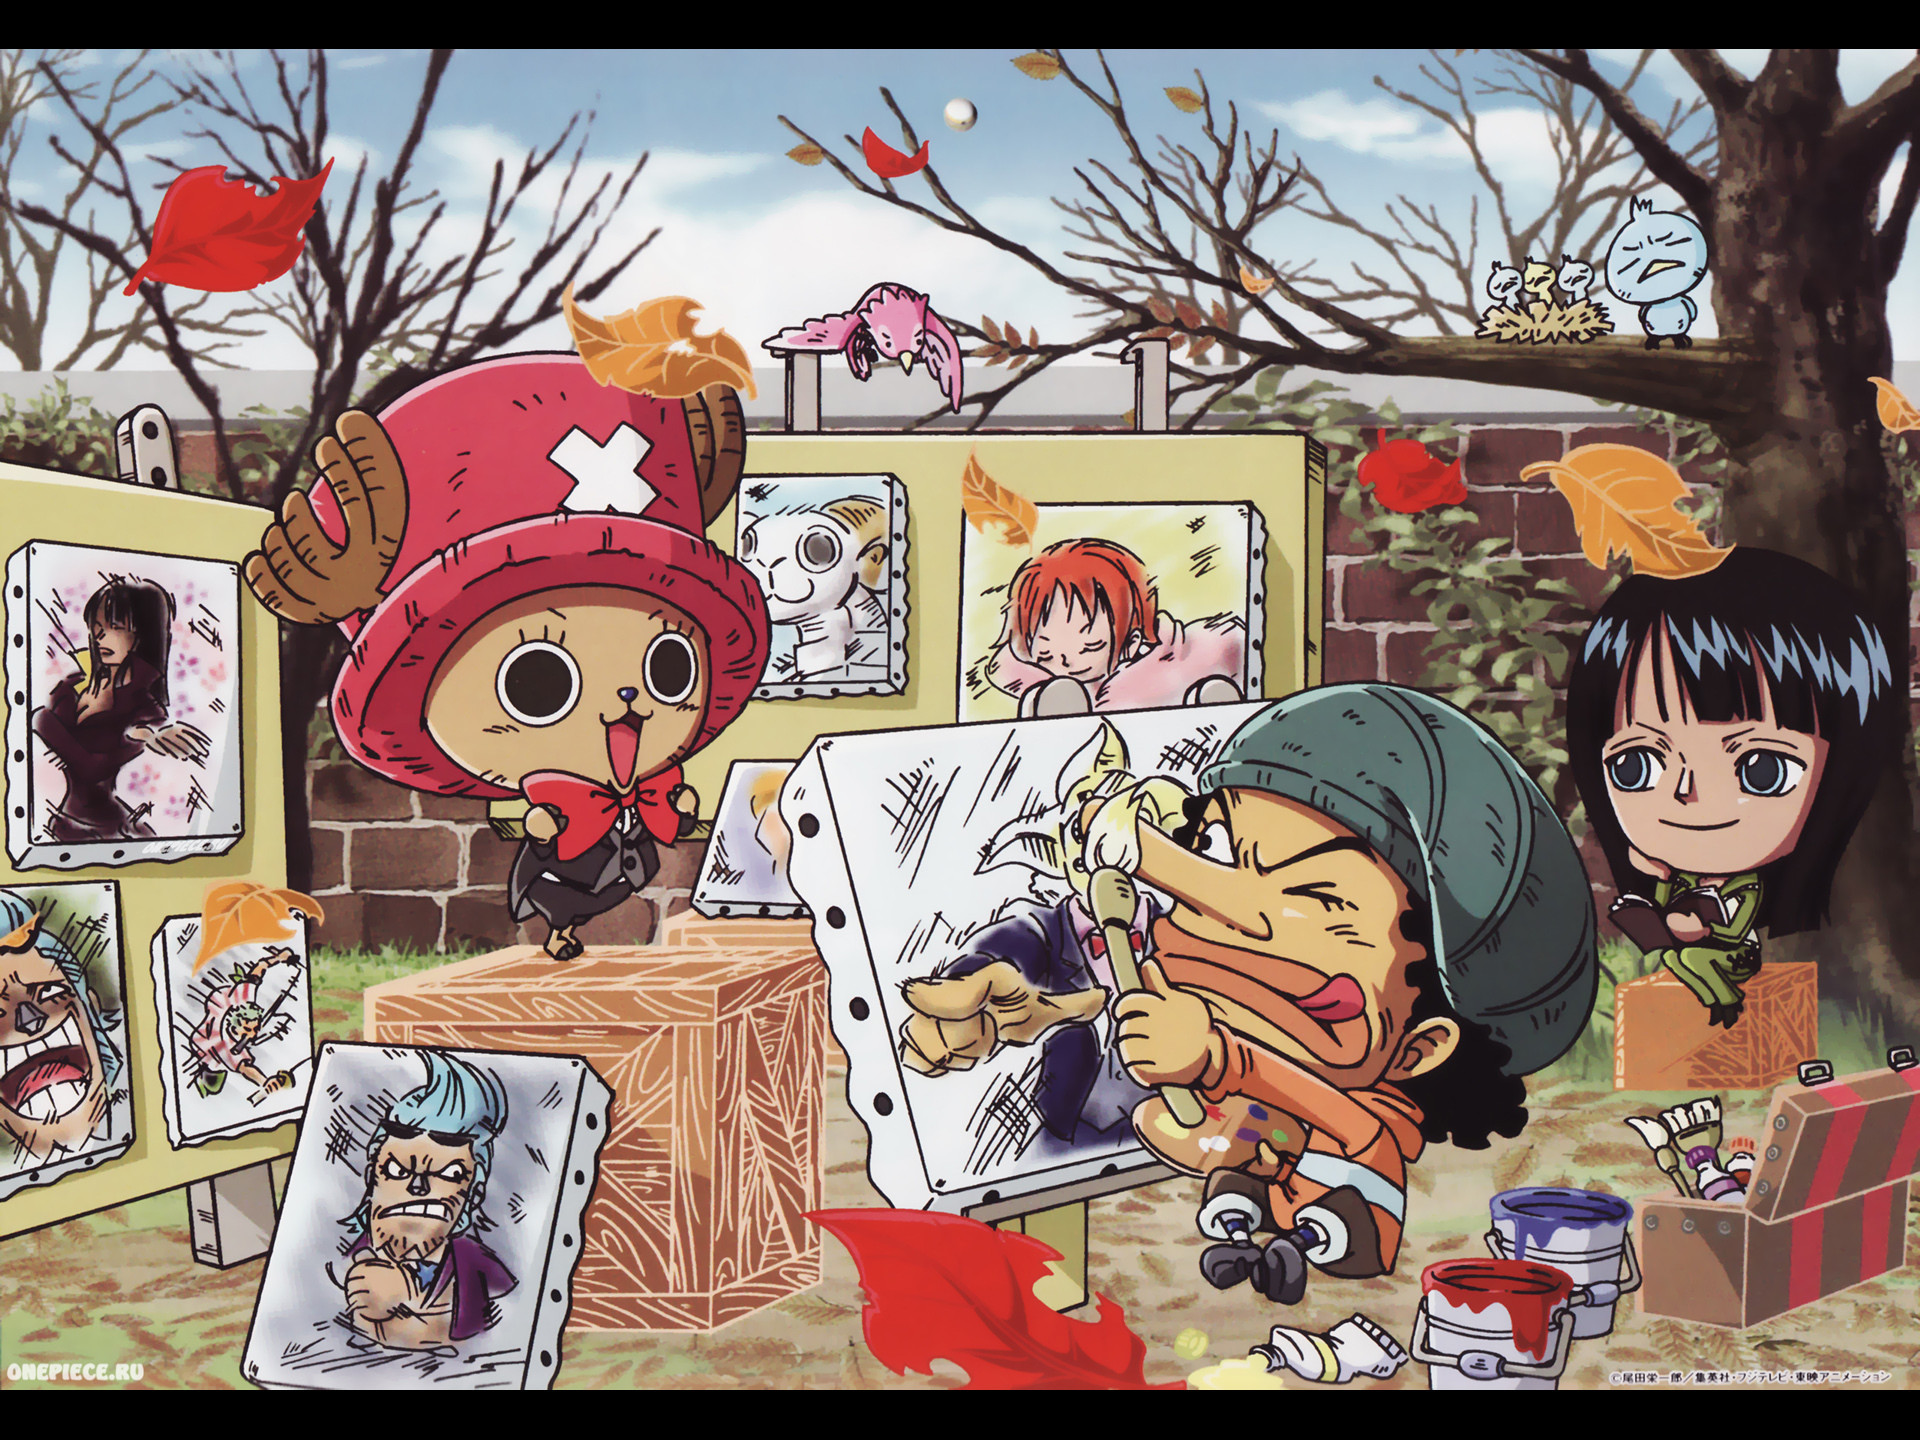 Aƒ Aƒ Aƒ Aƒ A A C One Piece Wallpaper